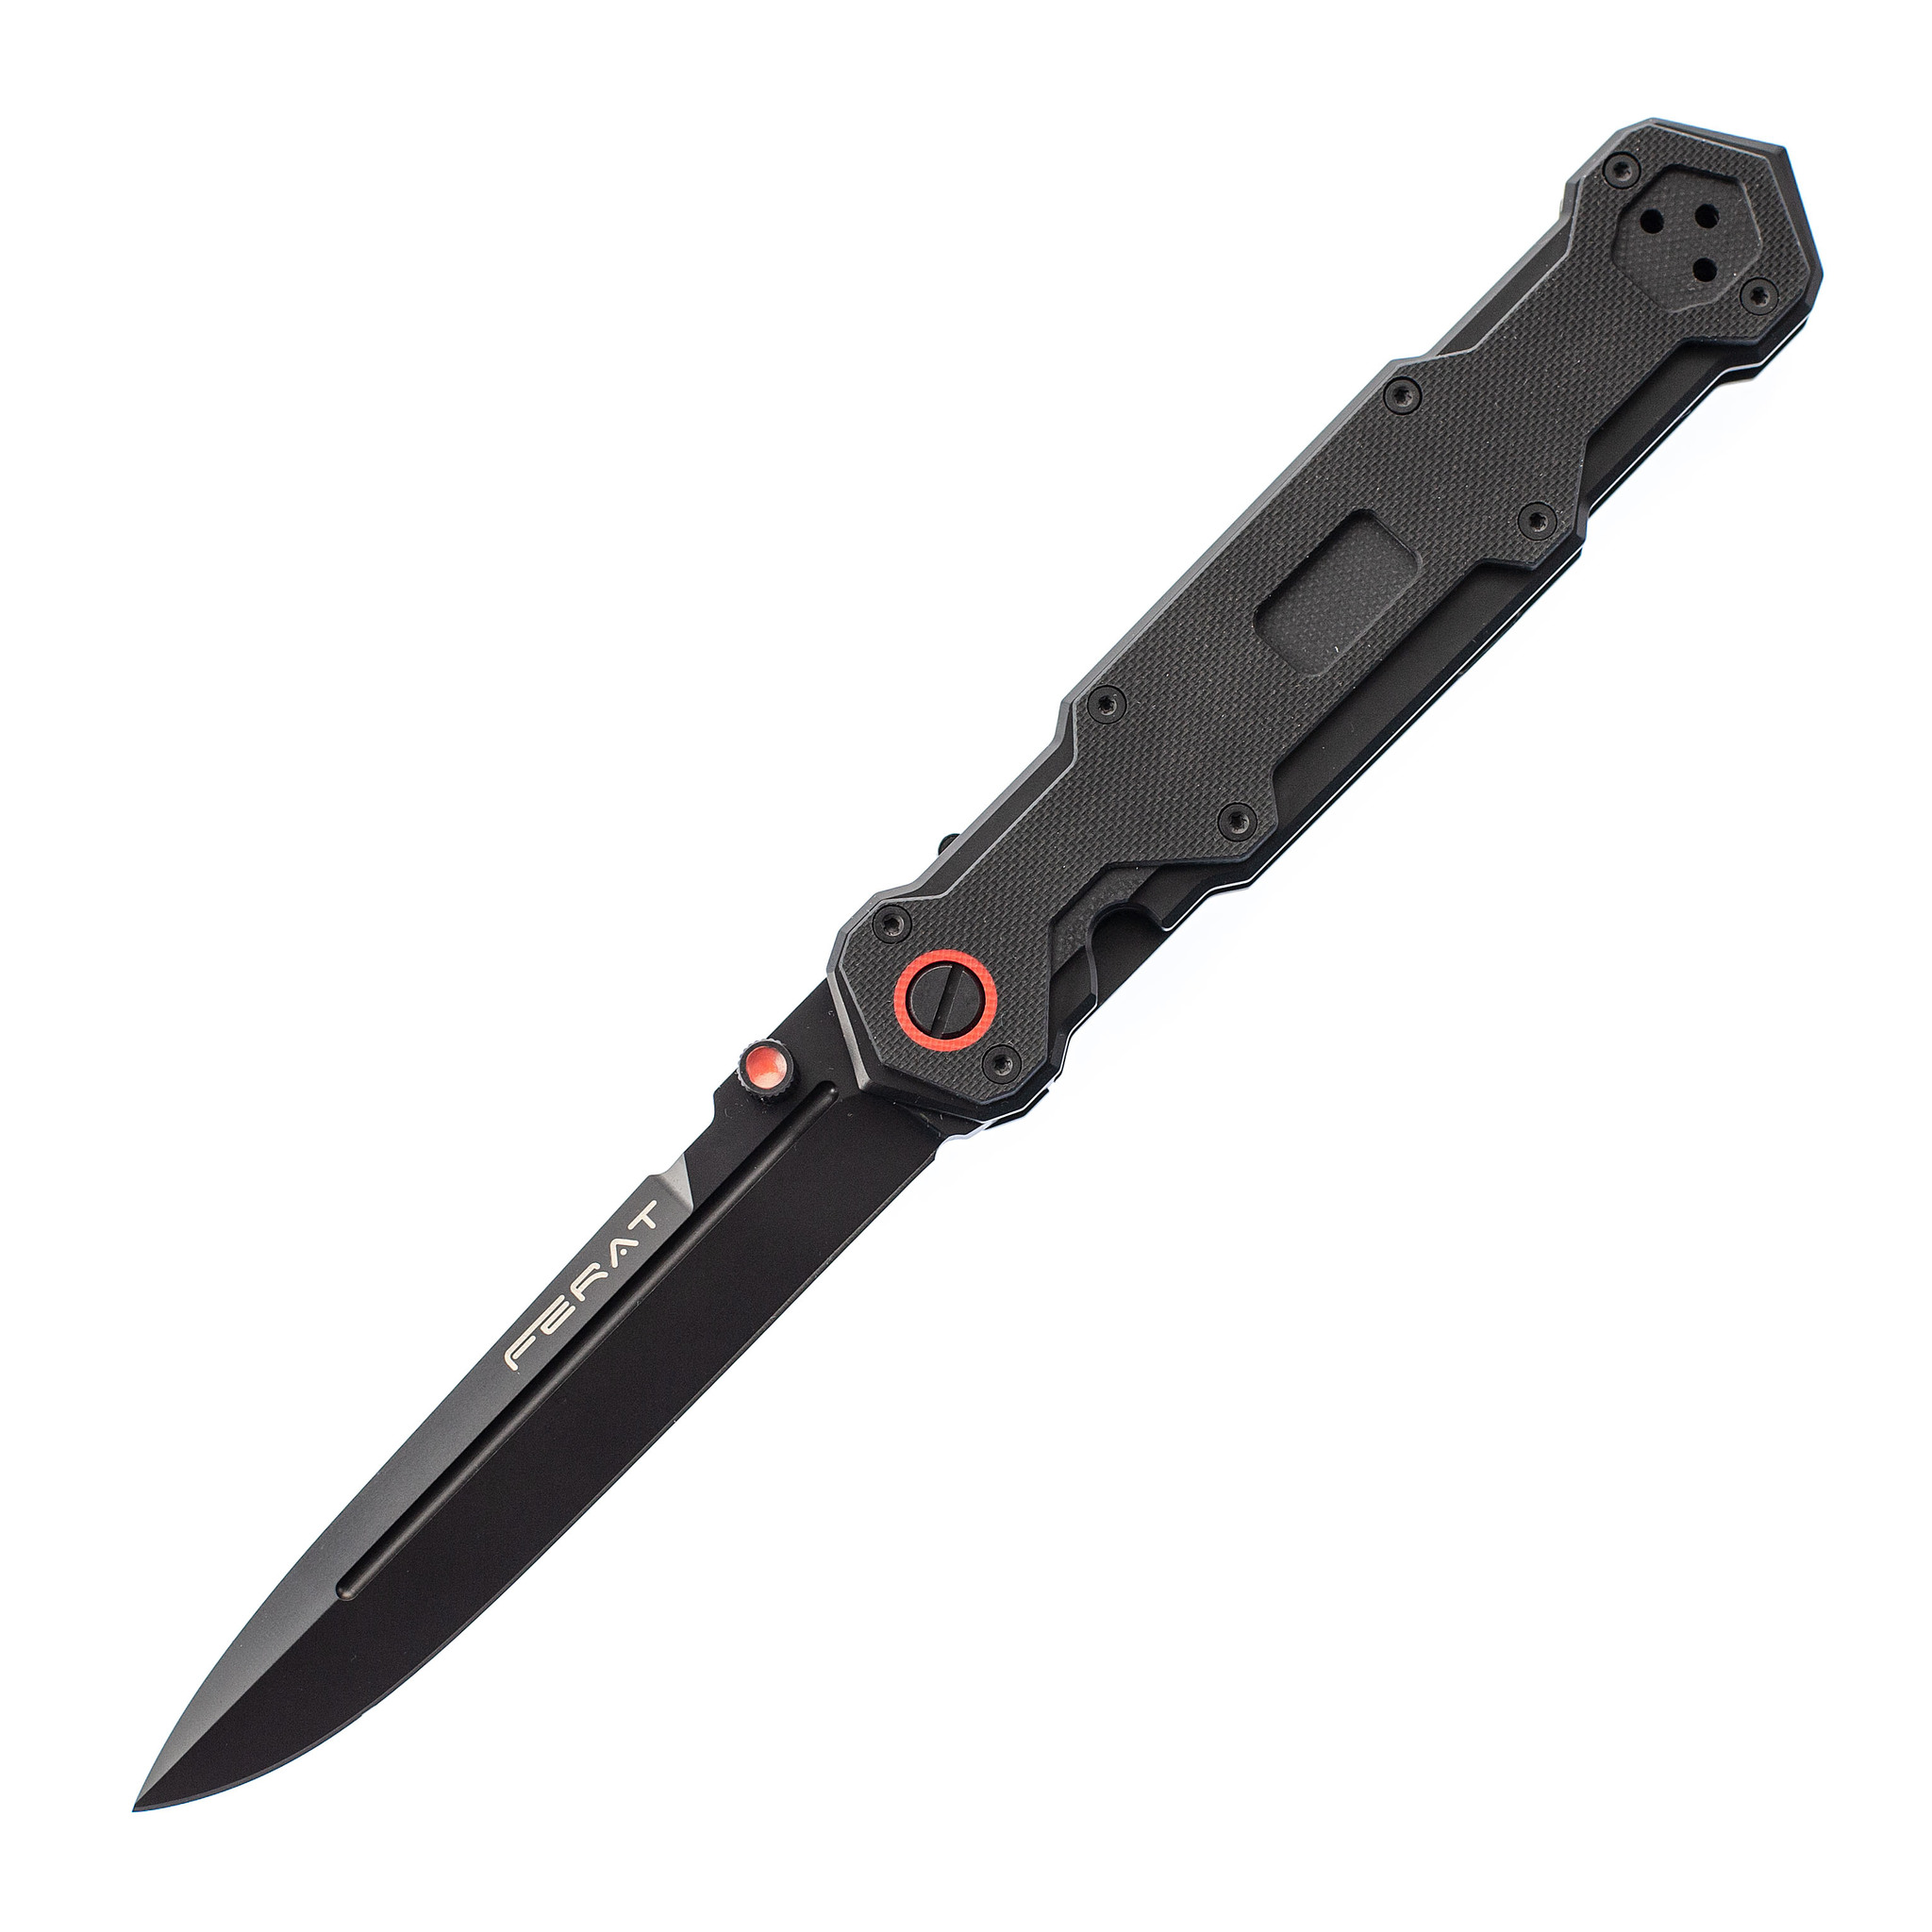   Ножиков Складной нож Ferat Black, сталь D2, рукоять G10, Mr.Blade